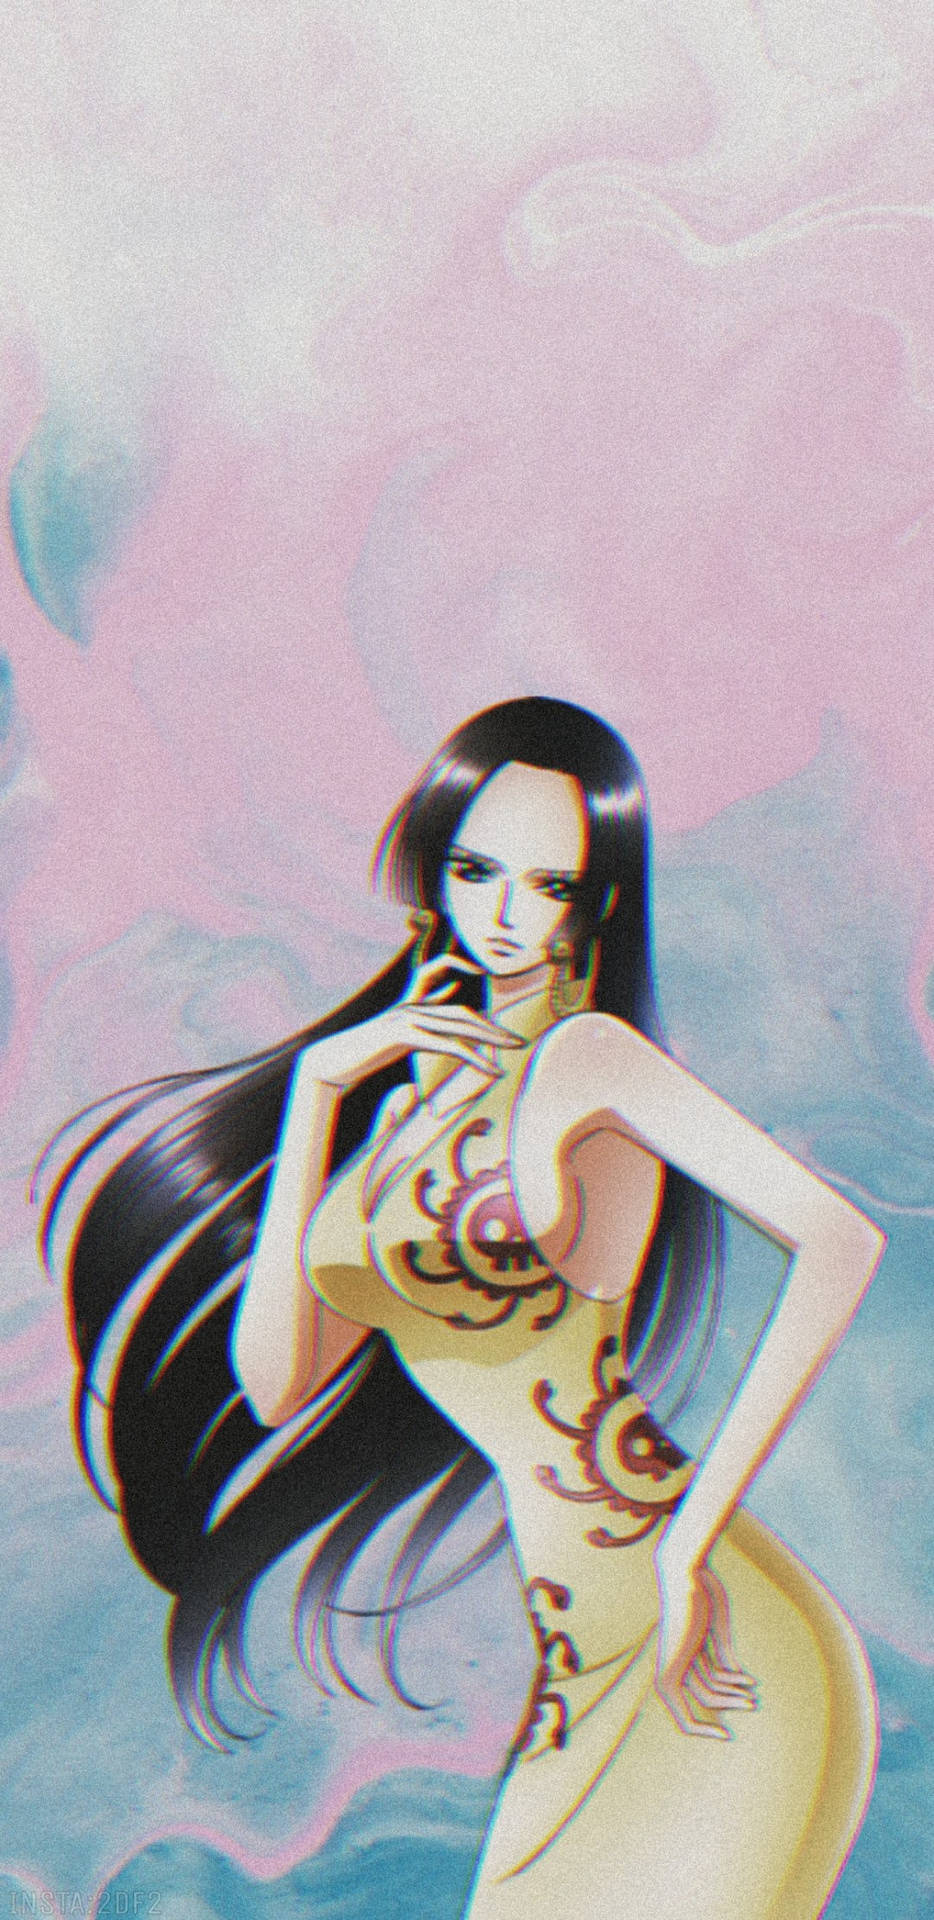 Nico Robin One Piece Sleeveless Dress Background